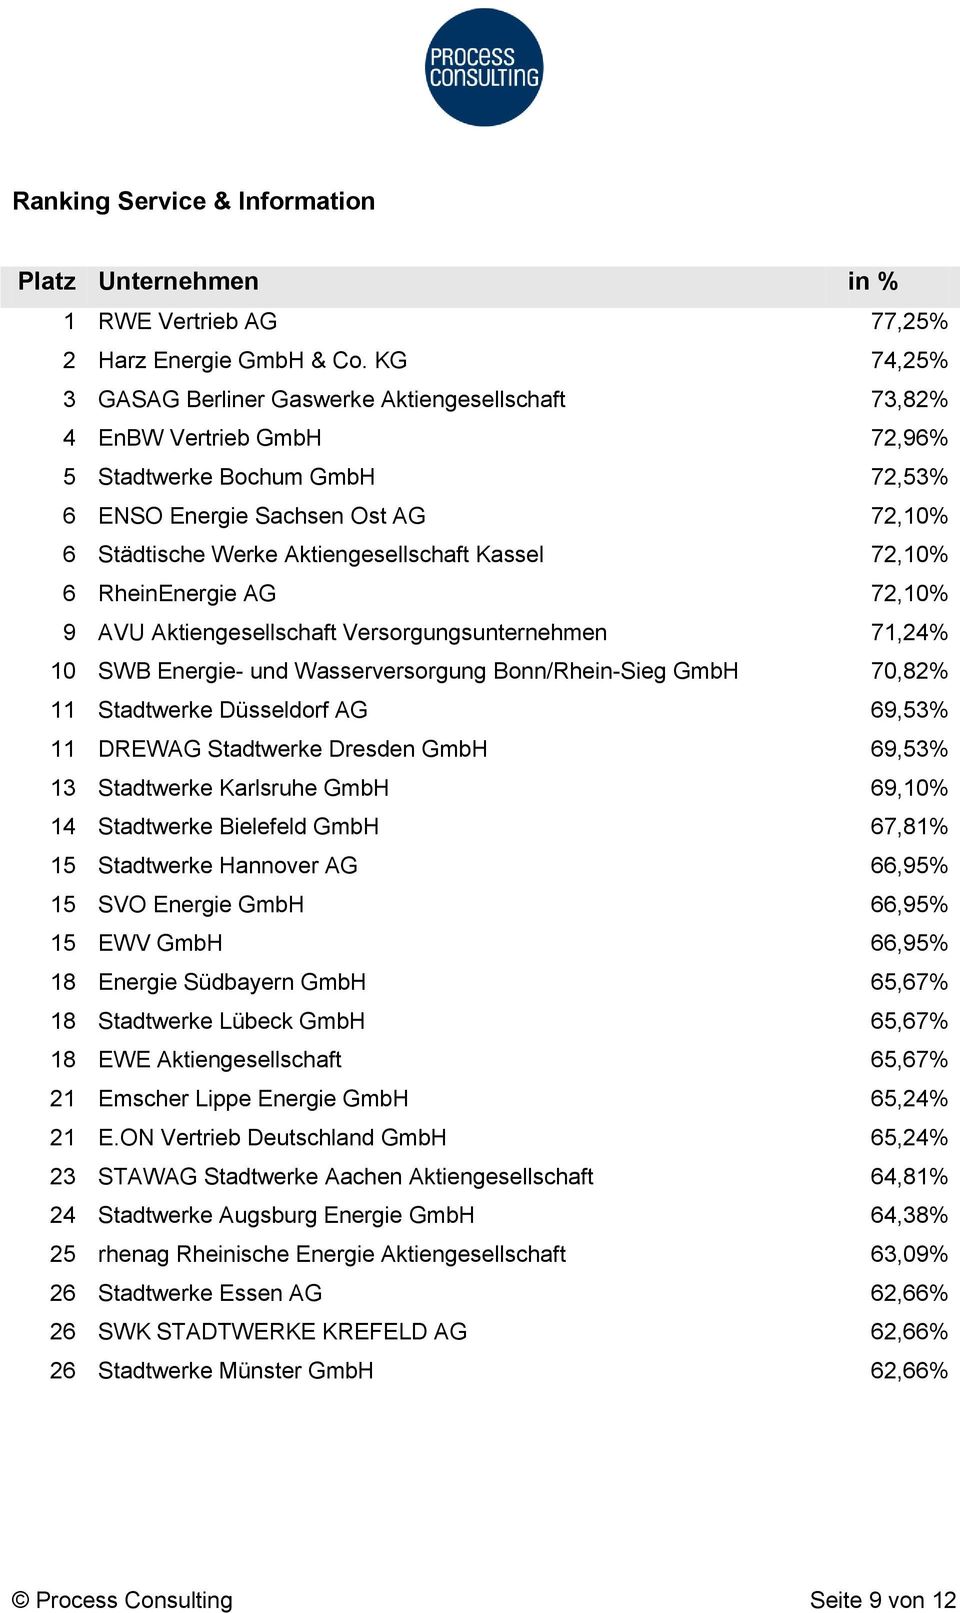 Kassel 72,10% 6 RheinEnergie AG 72,10% 9 AVU Aktiengesellschaft Versorgungsunternehmen 71,24% 10 SWB Energie- und Wasserversorgung Bonn/Rhein-Sieg GmbH 70,82% 11 Stadtwerke Düsseldorf AG 69,53% 11